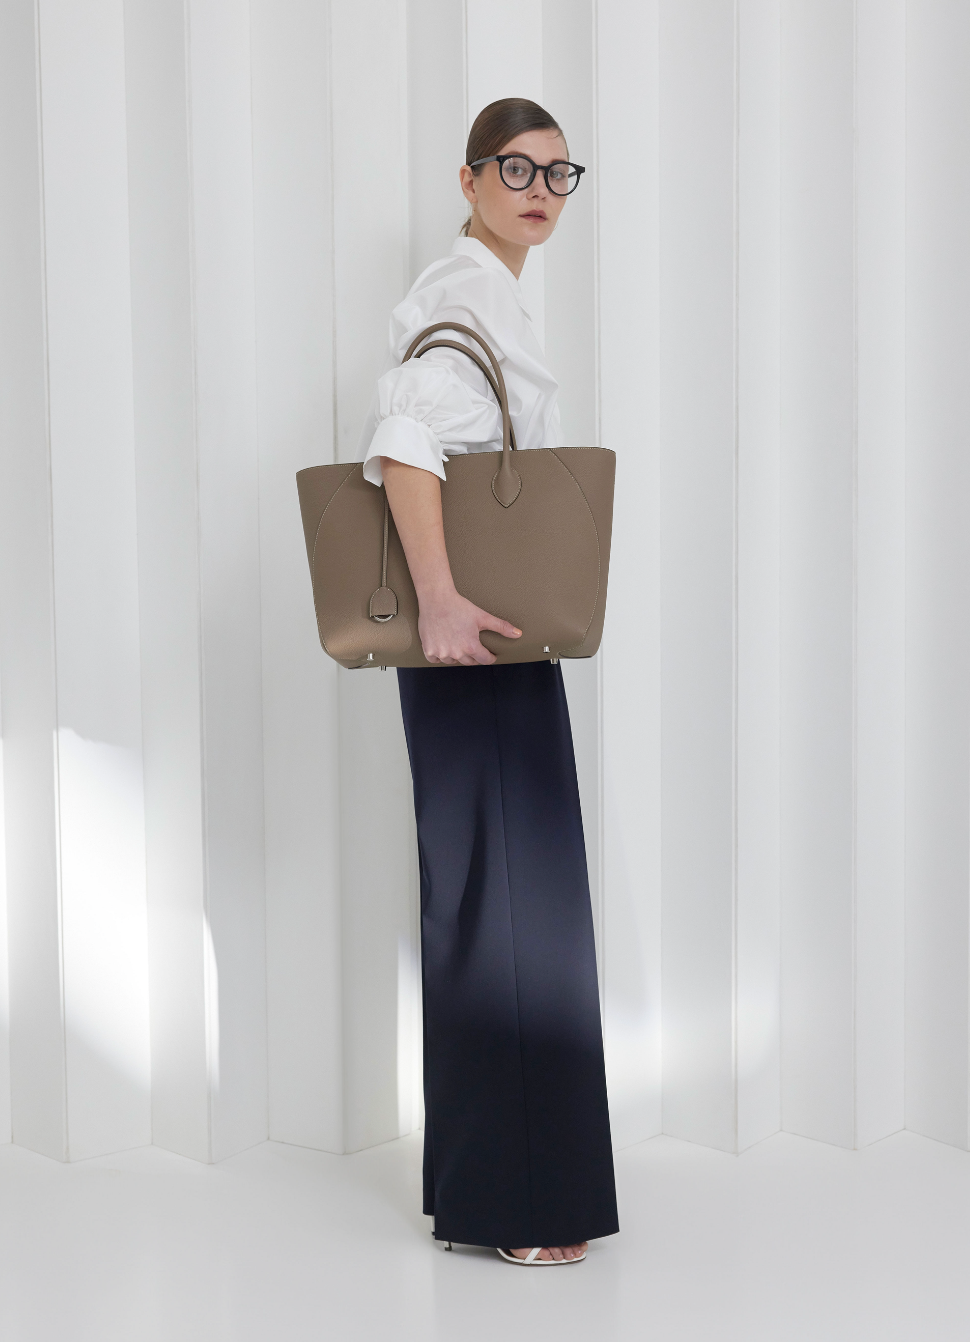 Uma mulher de negócios transporta a mala de couro perfeita para o dia a dia no escritório